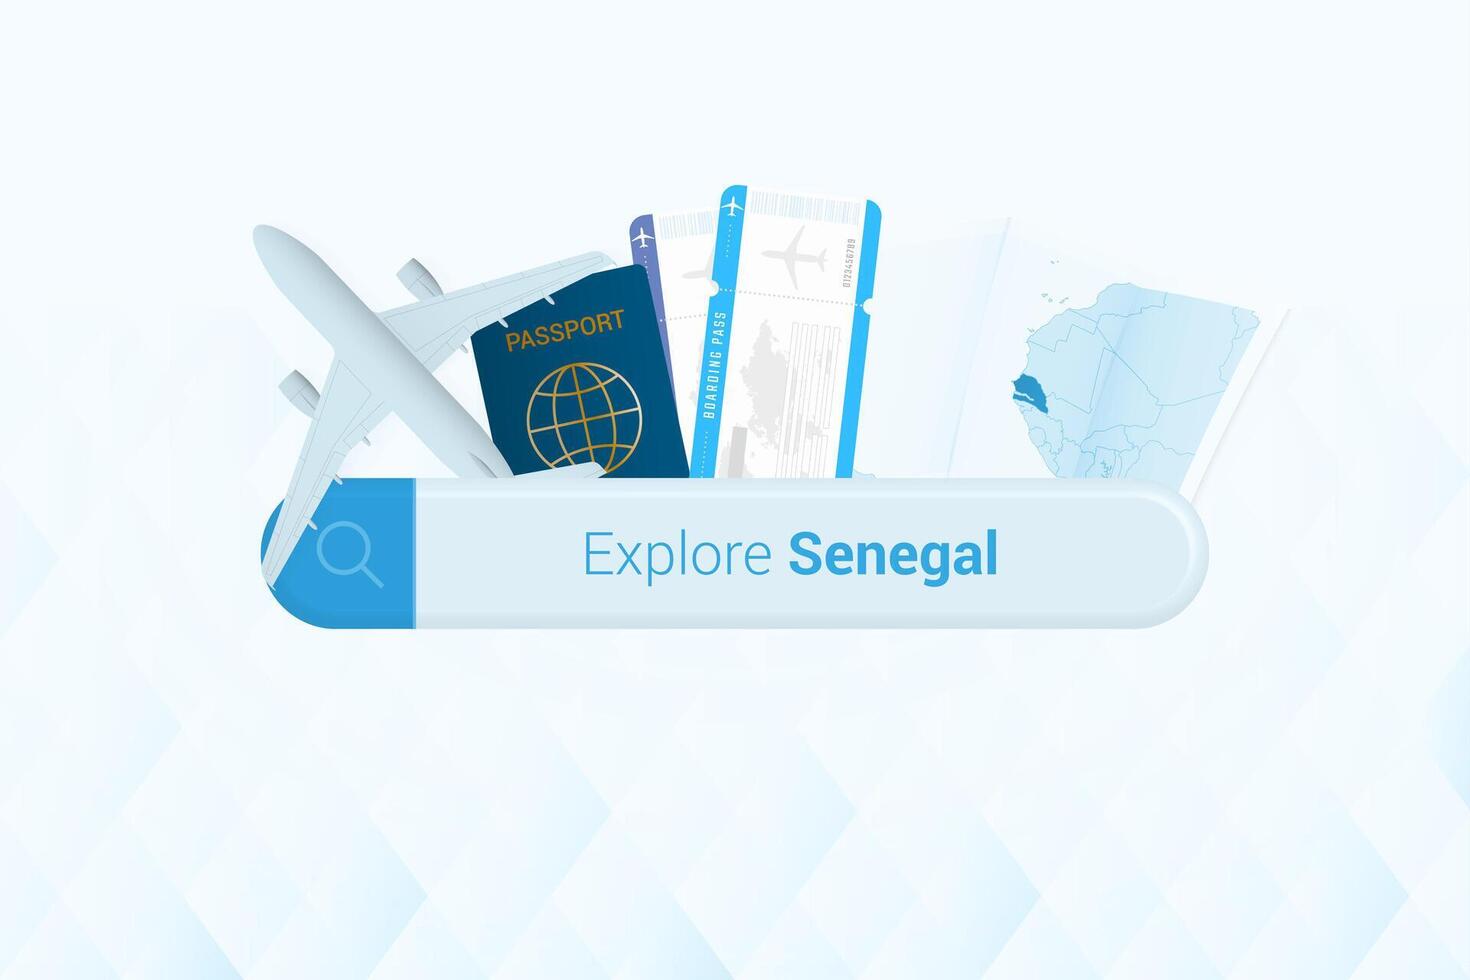 suchen Tickets zu Senegal oder Reise Ziel im Senegal. suchen Bar mit Flugzeug, Reisepass, Einsteigen passieren, Tickets und Karte. vektor